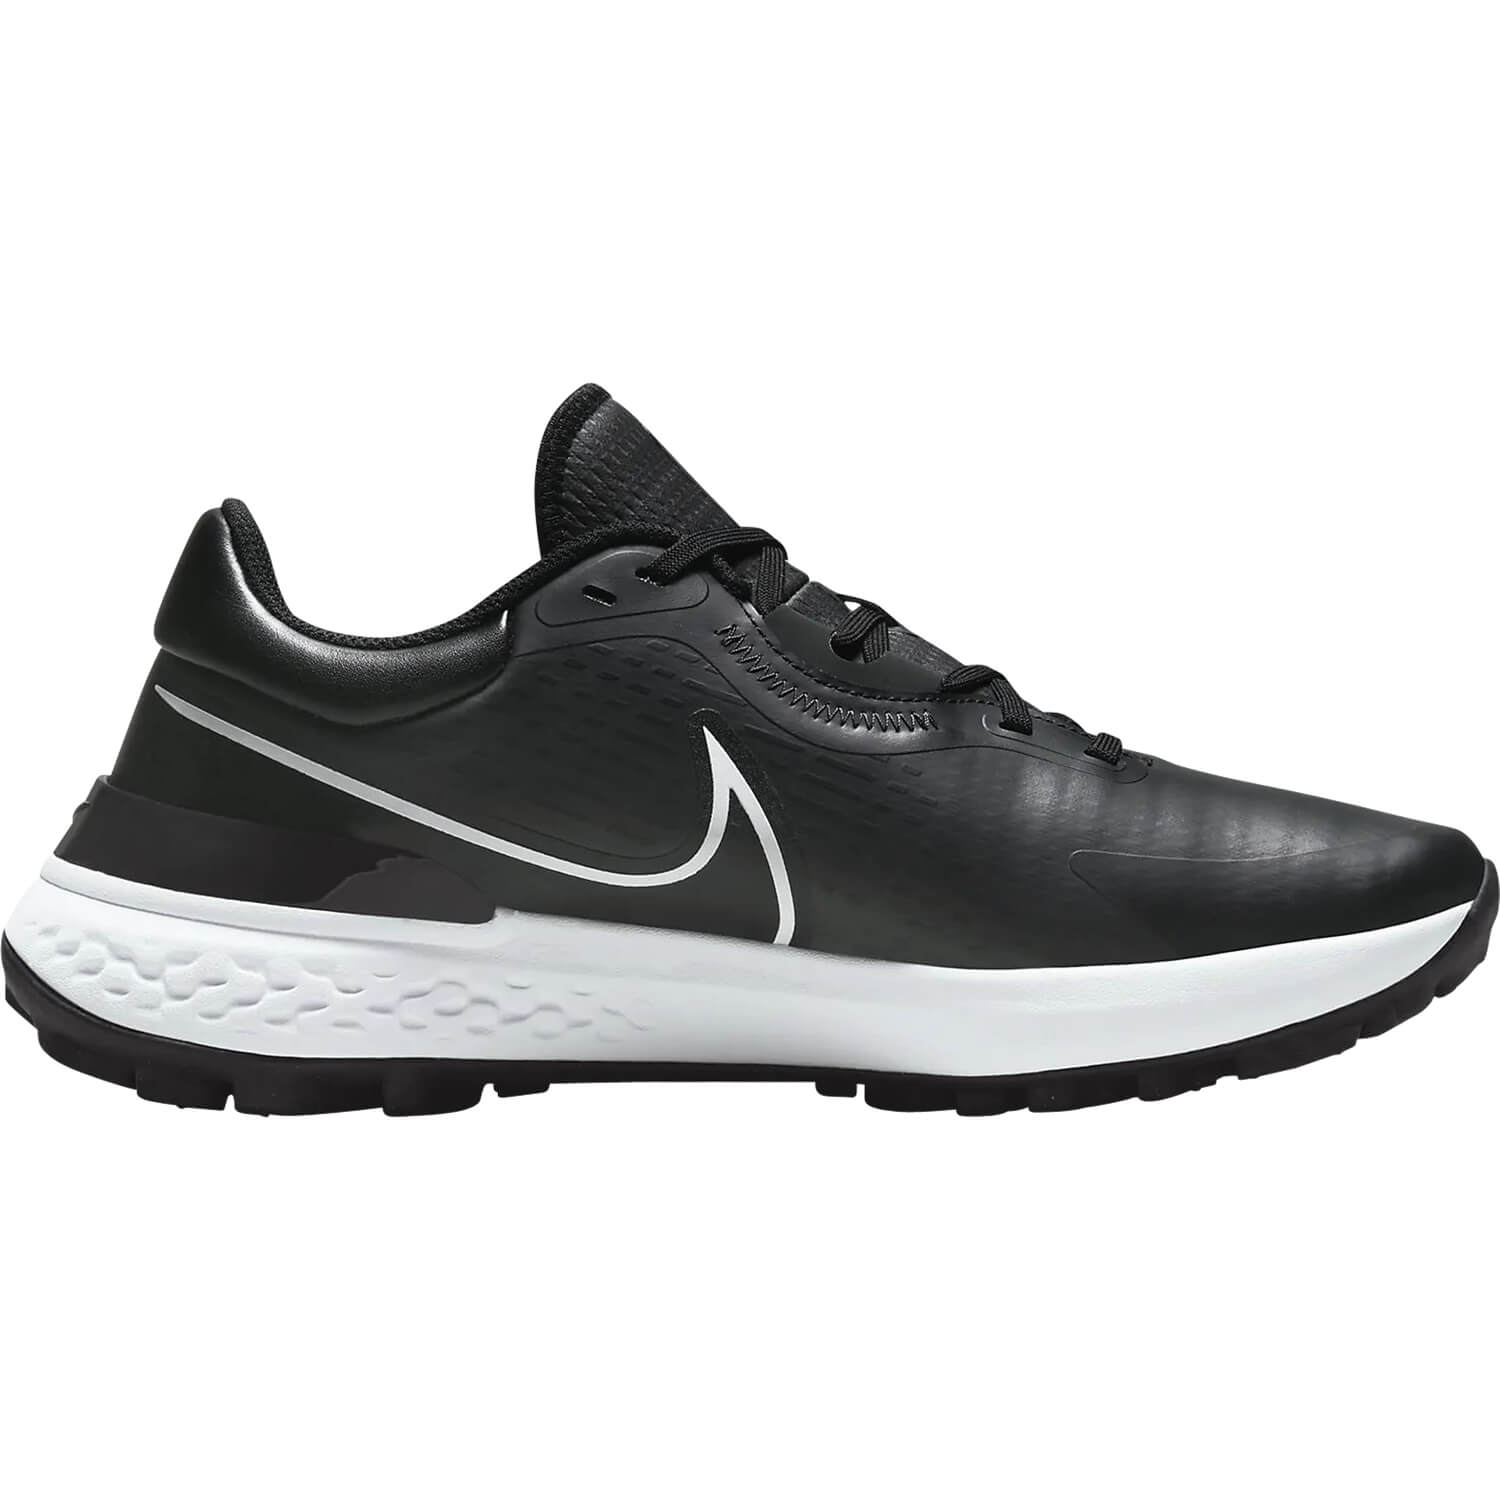 Nike Golf Golfschuhe Infinity Pro 2, grau/weiß/schwarz hier günstig kaufen All4Golf